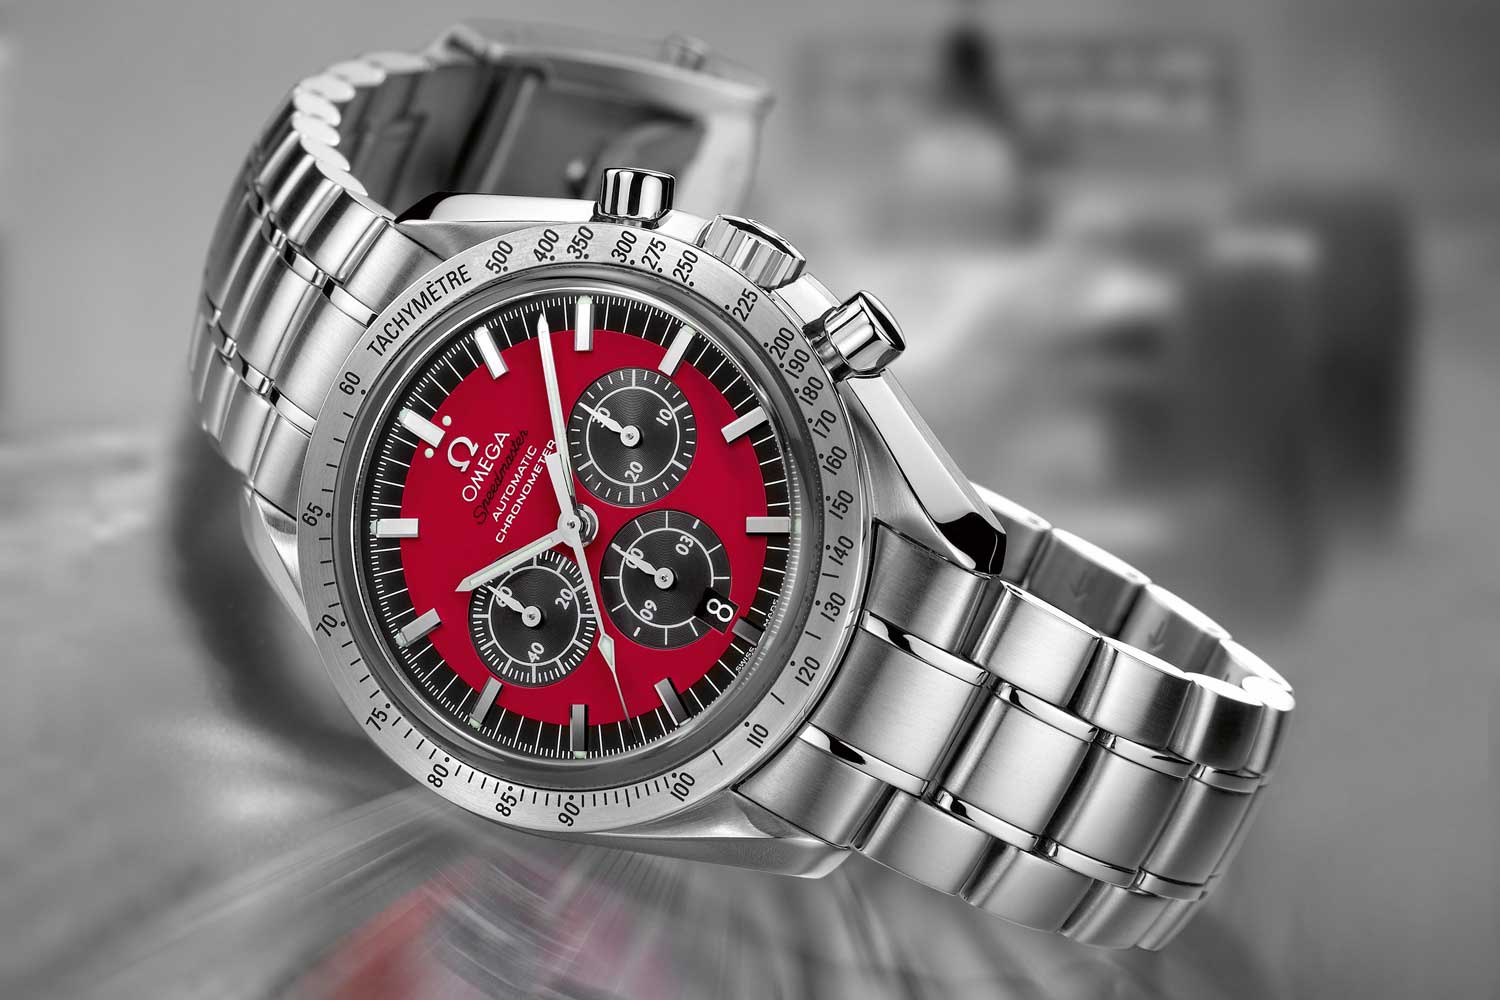 Speedmaster – Michael Schumacher “The Legend” Collection